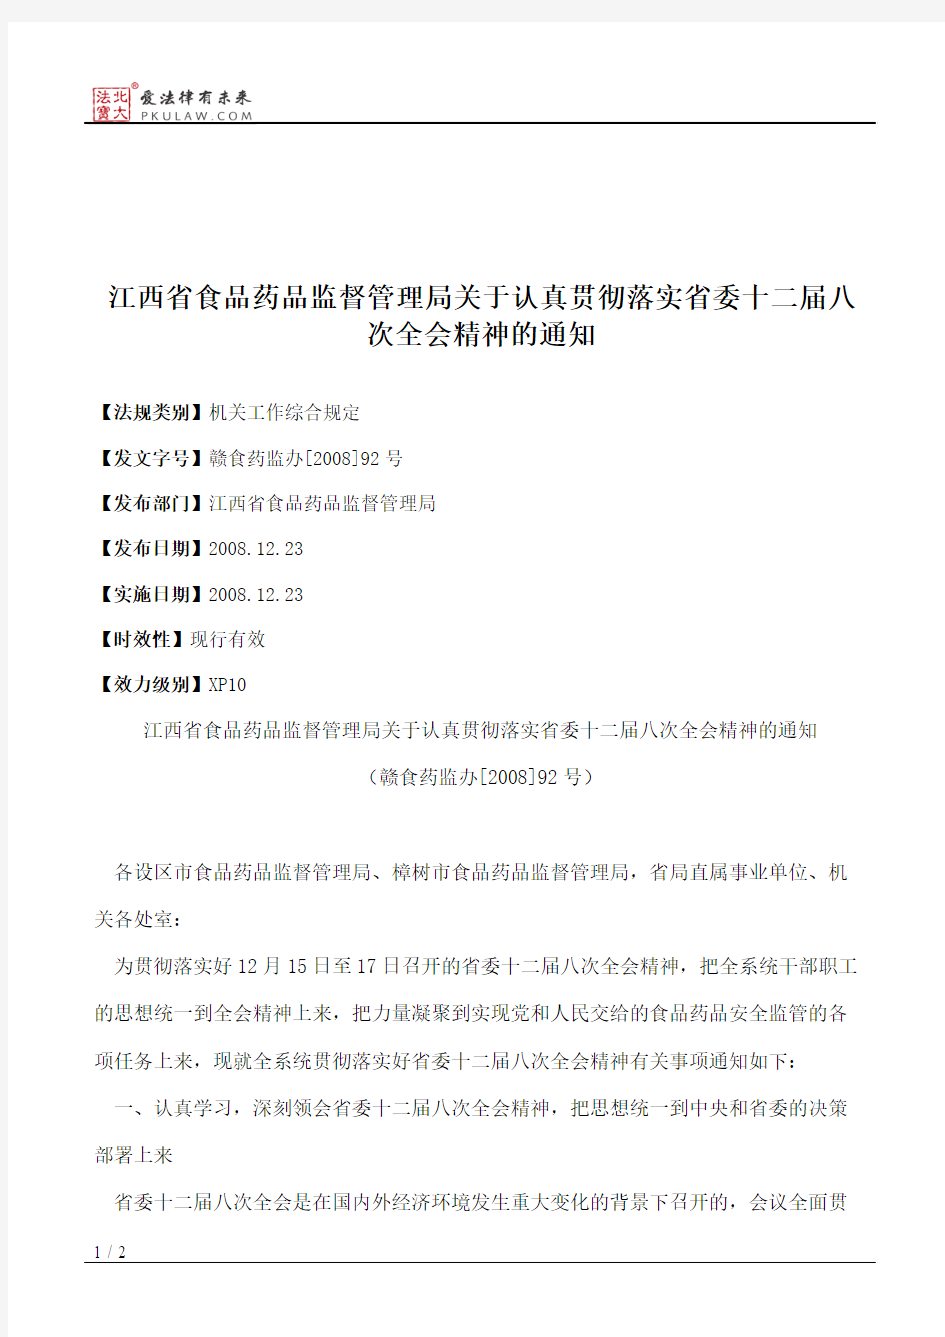 江西省食品药品监督管理局关于认真贯彻落实省委十二届八次全会精